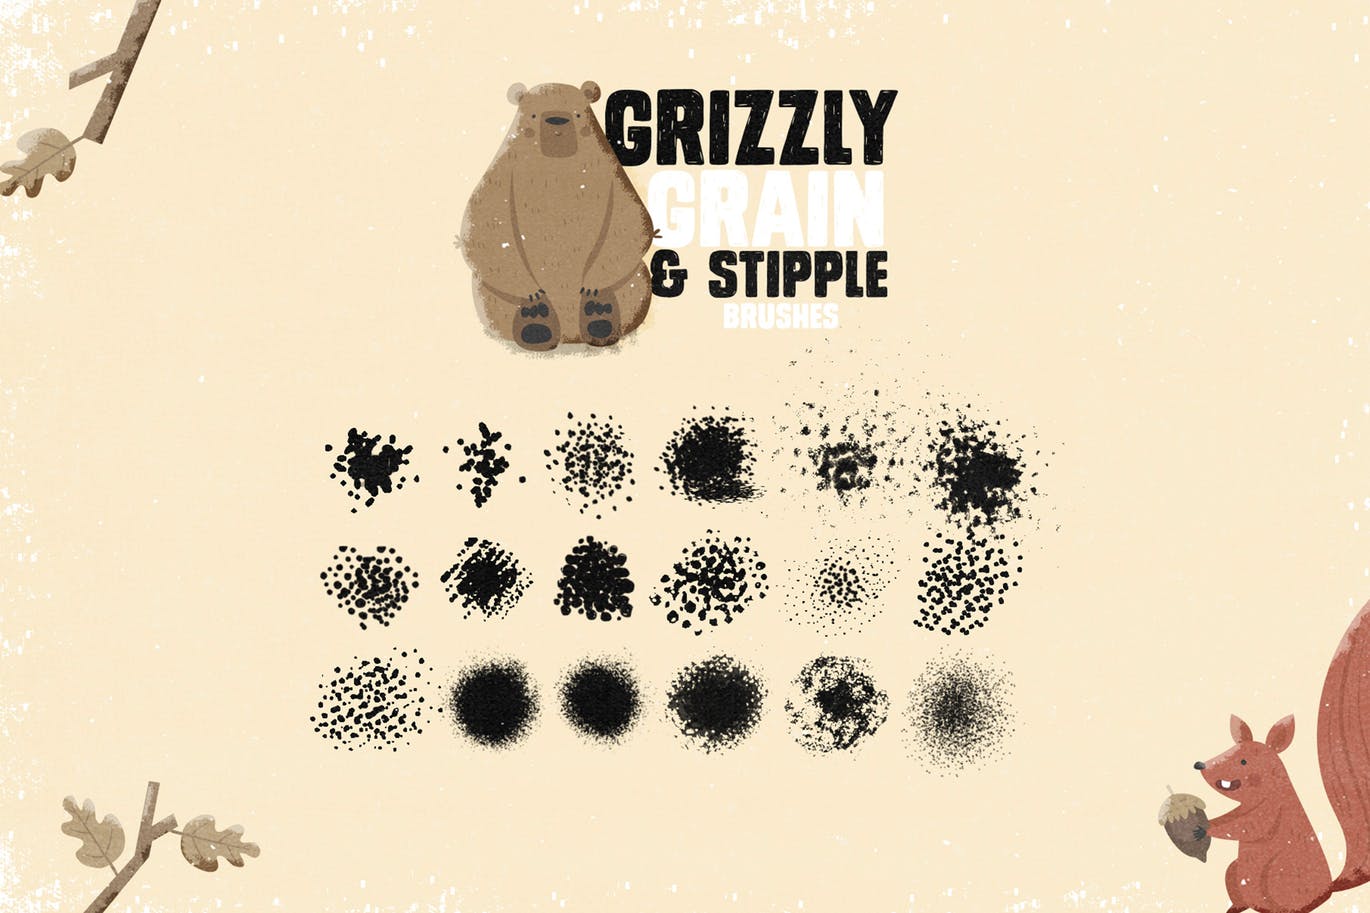 手绘设计师必备-流行的仿旧阴影效果点画创作PS笔刷素材库精选 Grizzly Grain & Stipple Shader Brushes插图(5)